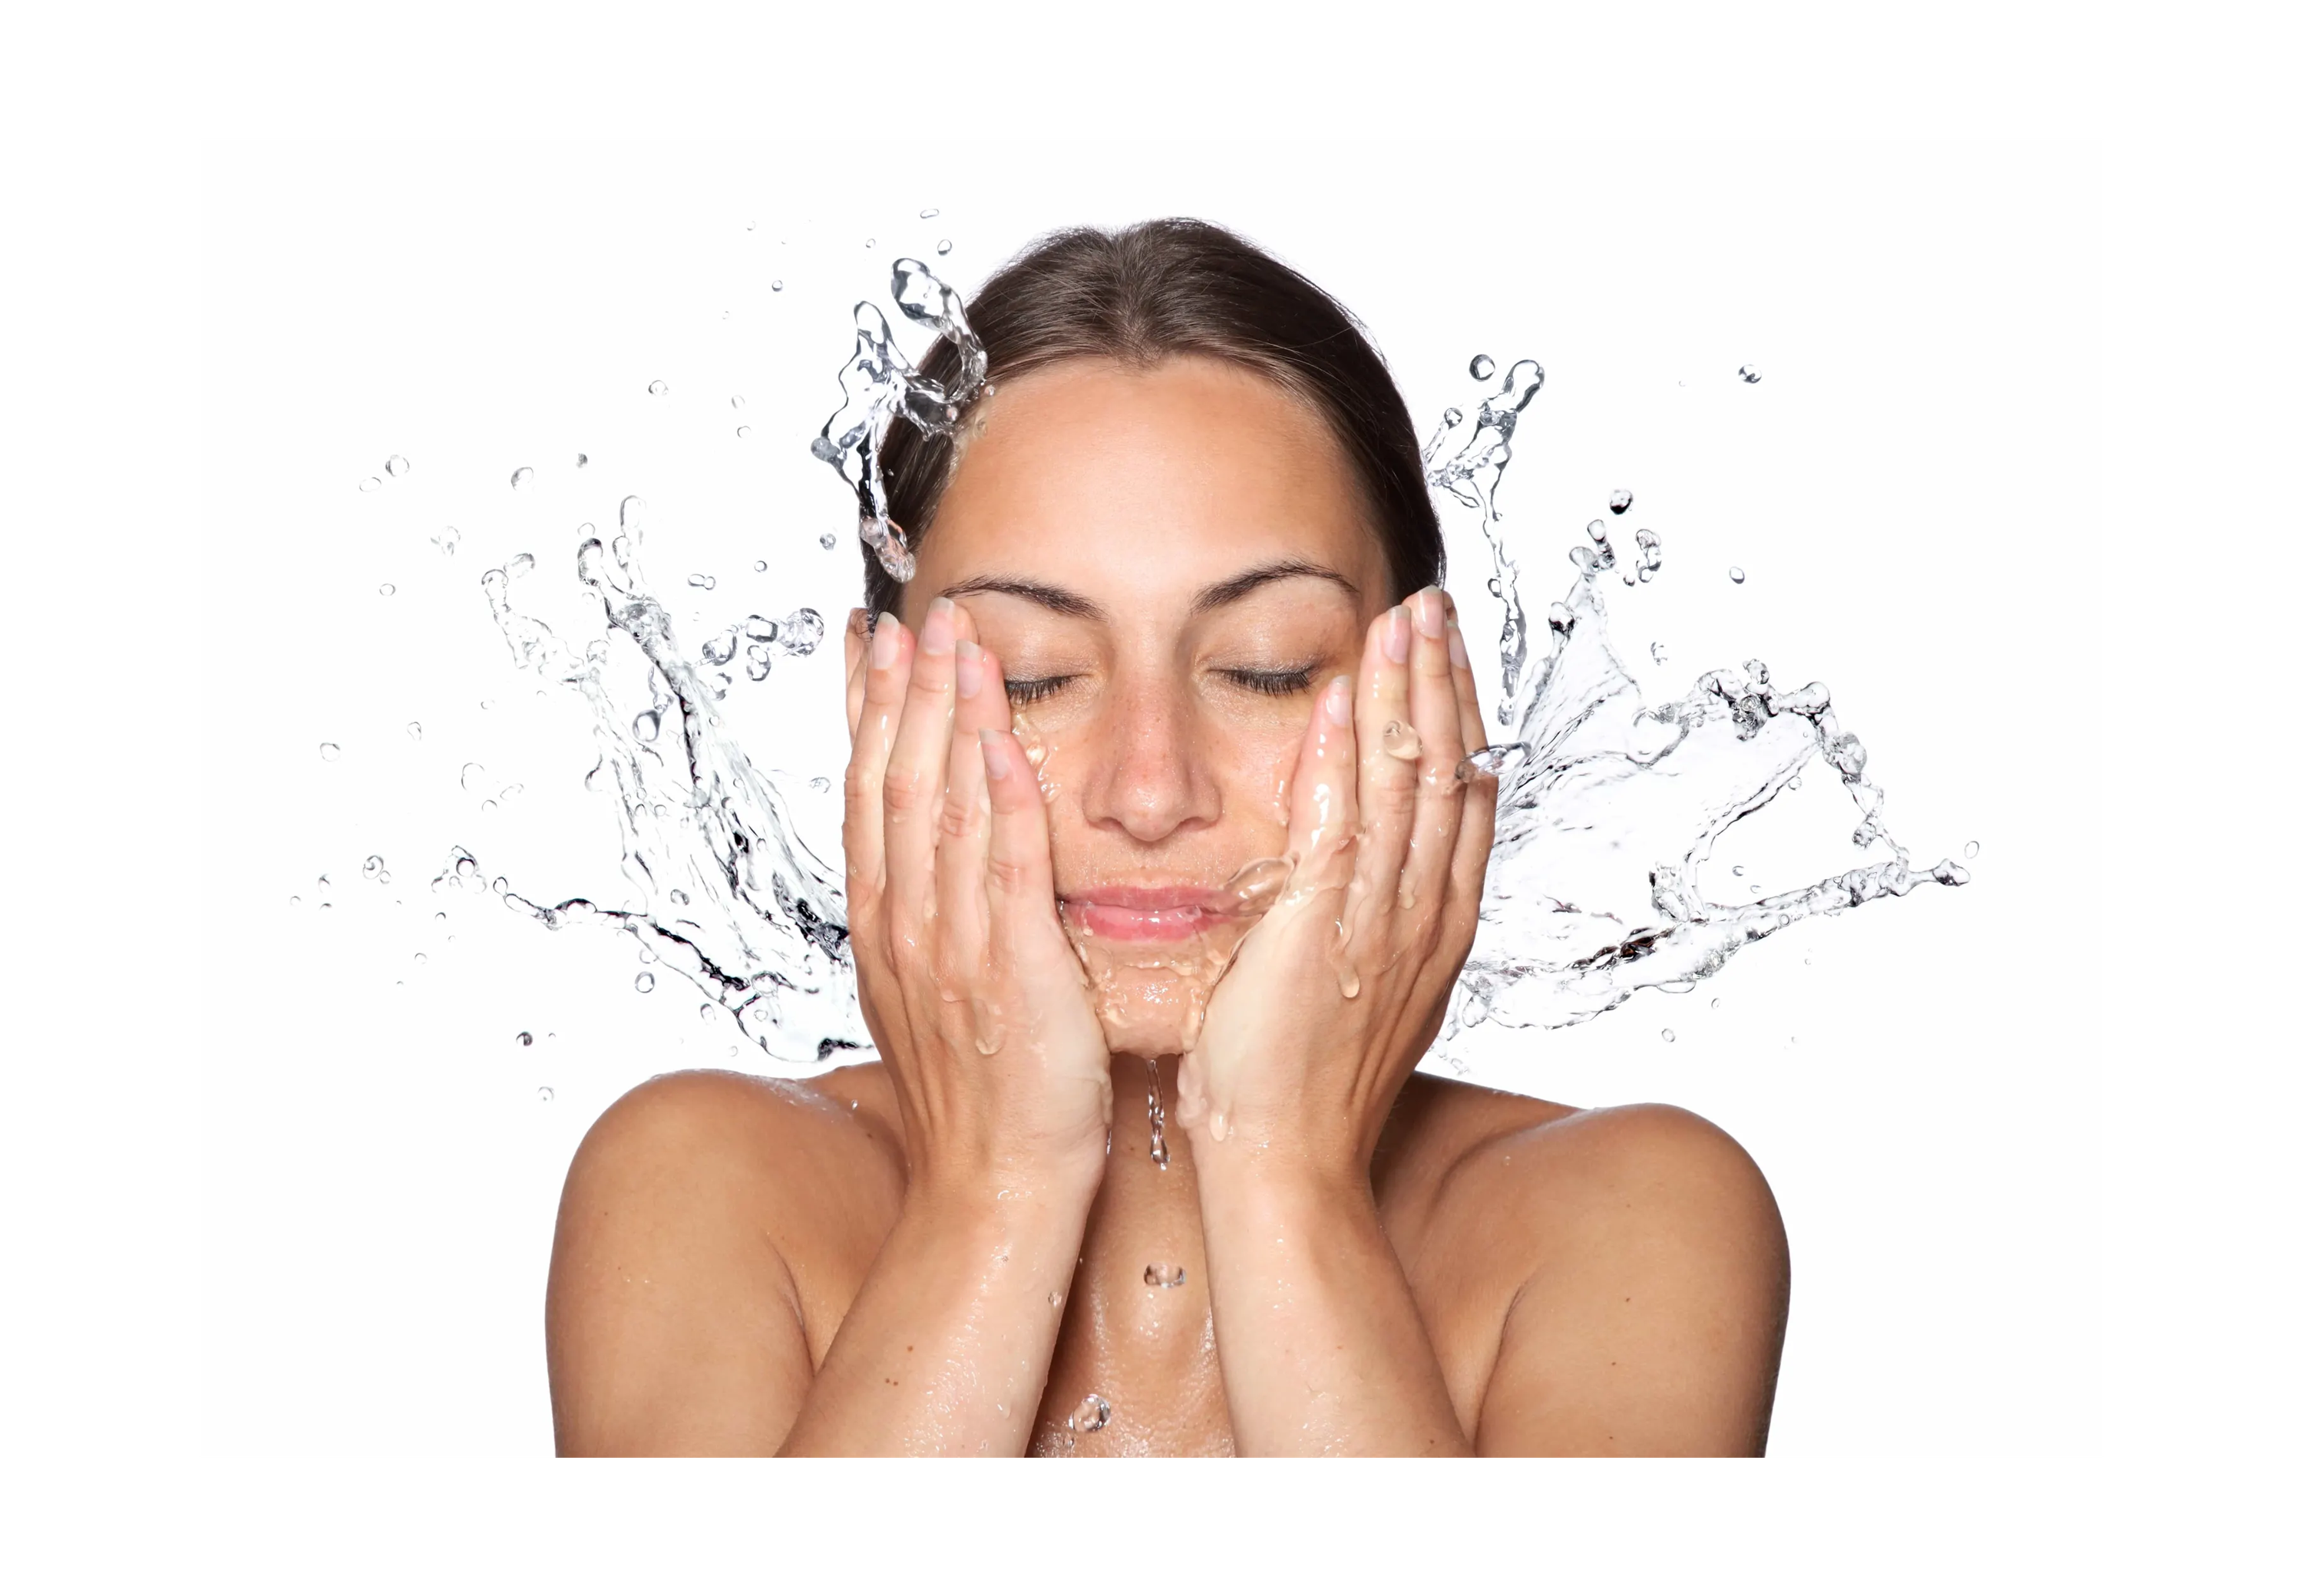 woman splashing water on her face